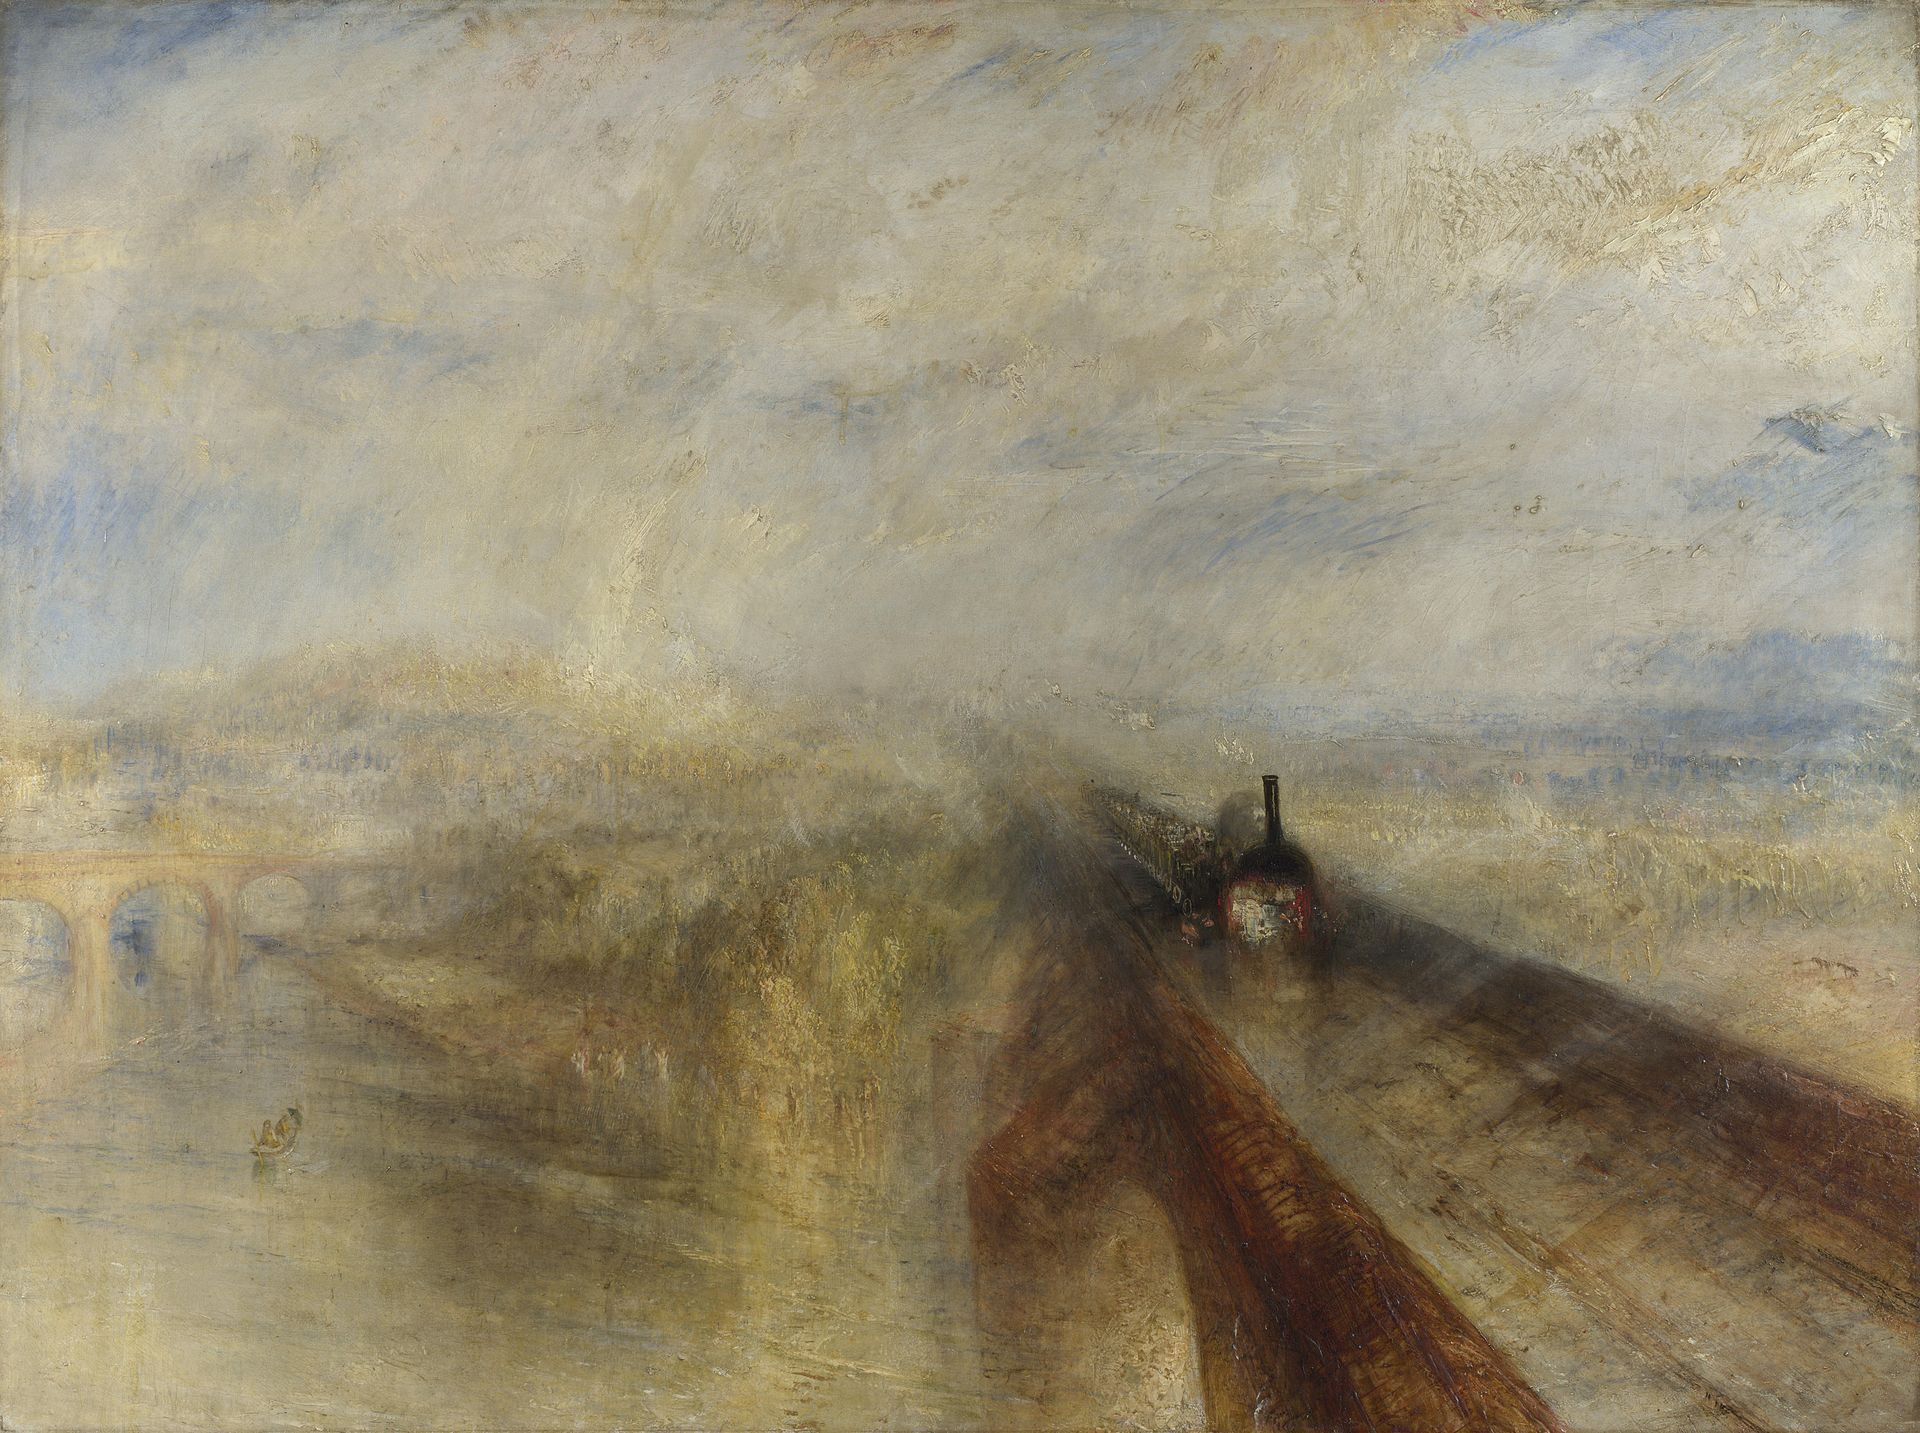 Regen, Stoom en Snelheid - De Great Western Railway by Joseph Mallord William Turner - 1844 - 91 x 121.8 cm 